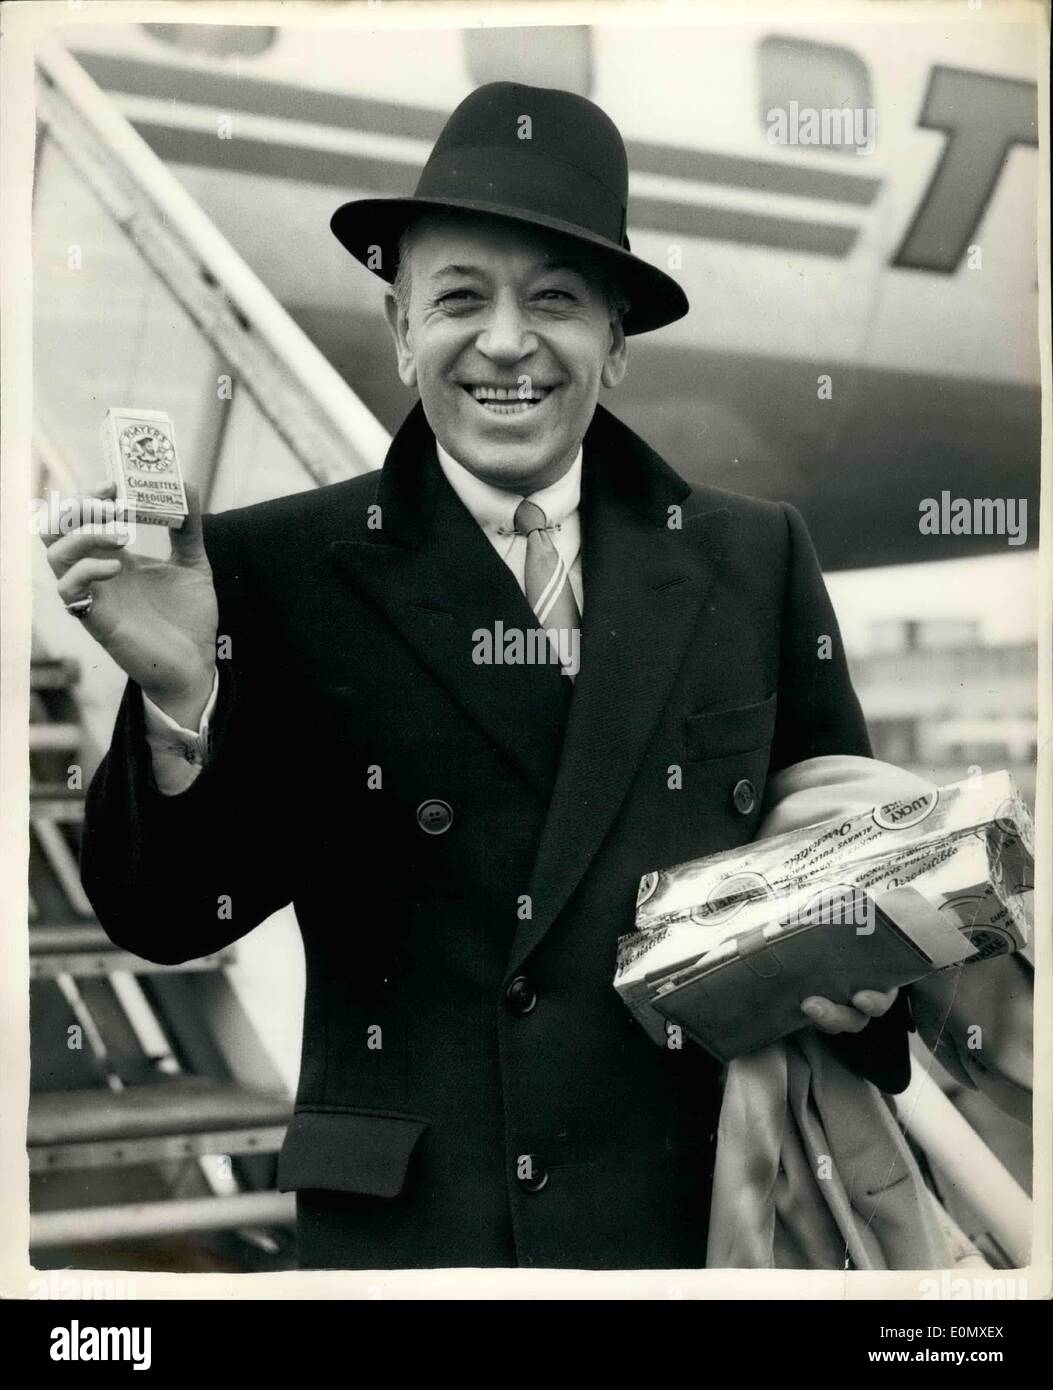 Febbraio 02, 1957 - George Raft arriva a Londra: George Raft il divo americano - che ha fatto il suo nome per i suoi ruoli di gangster in film - arrivato all'Aeroporto di Londra di questa mattina. Egli è a comparire in ''mattina Call'' - un film per essere realizzate in questo paese. Mostra fotografica di George Raft - al suo arrivo in aeroporto di Londra di questa mattina. Foto Stock